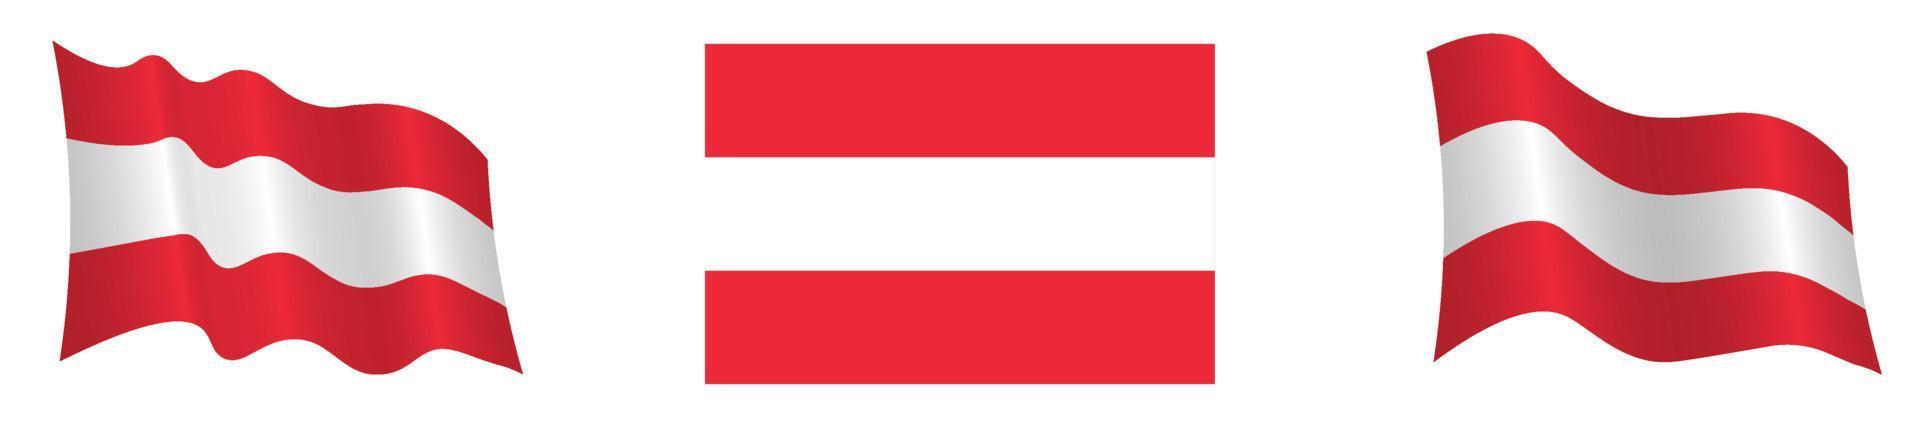 bandeira da república austríaca em posição estática e em movimento, desenvolvendo-se ao vento, sobre um fundo branco. cores de bandeira aprovadas precisas vetor